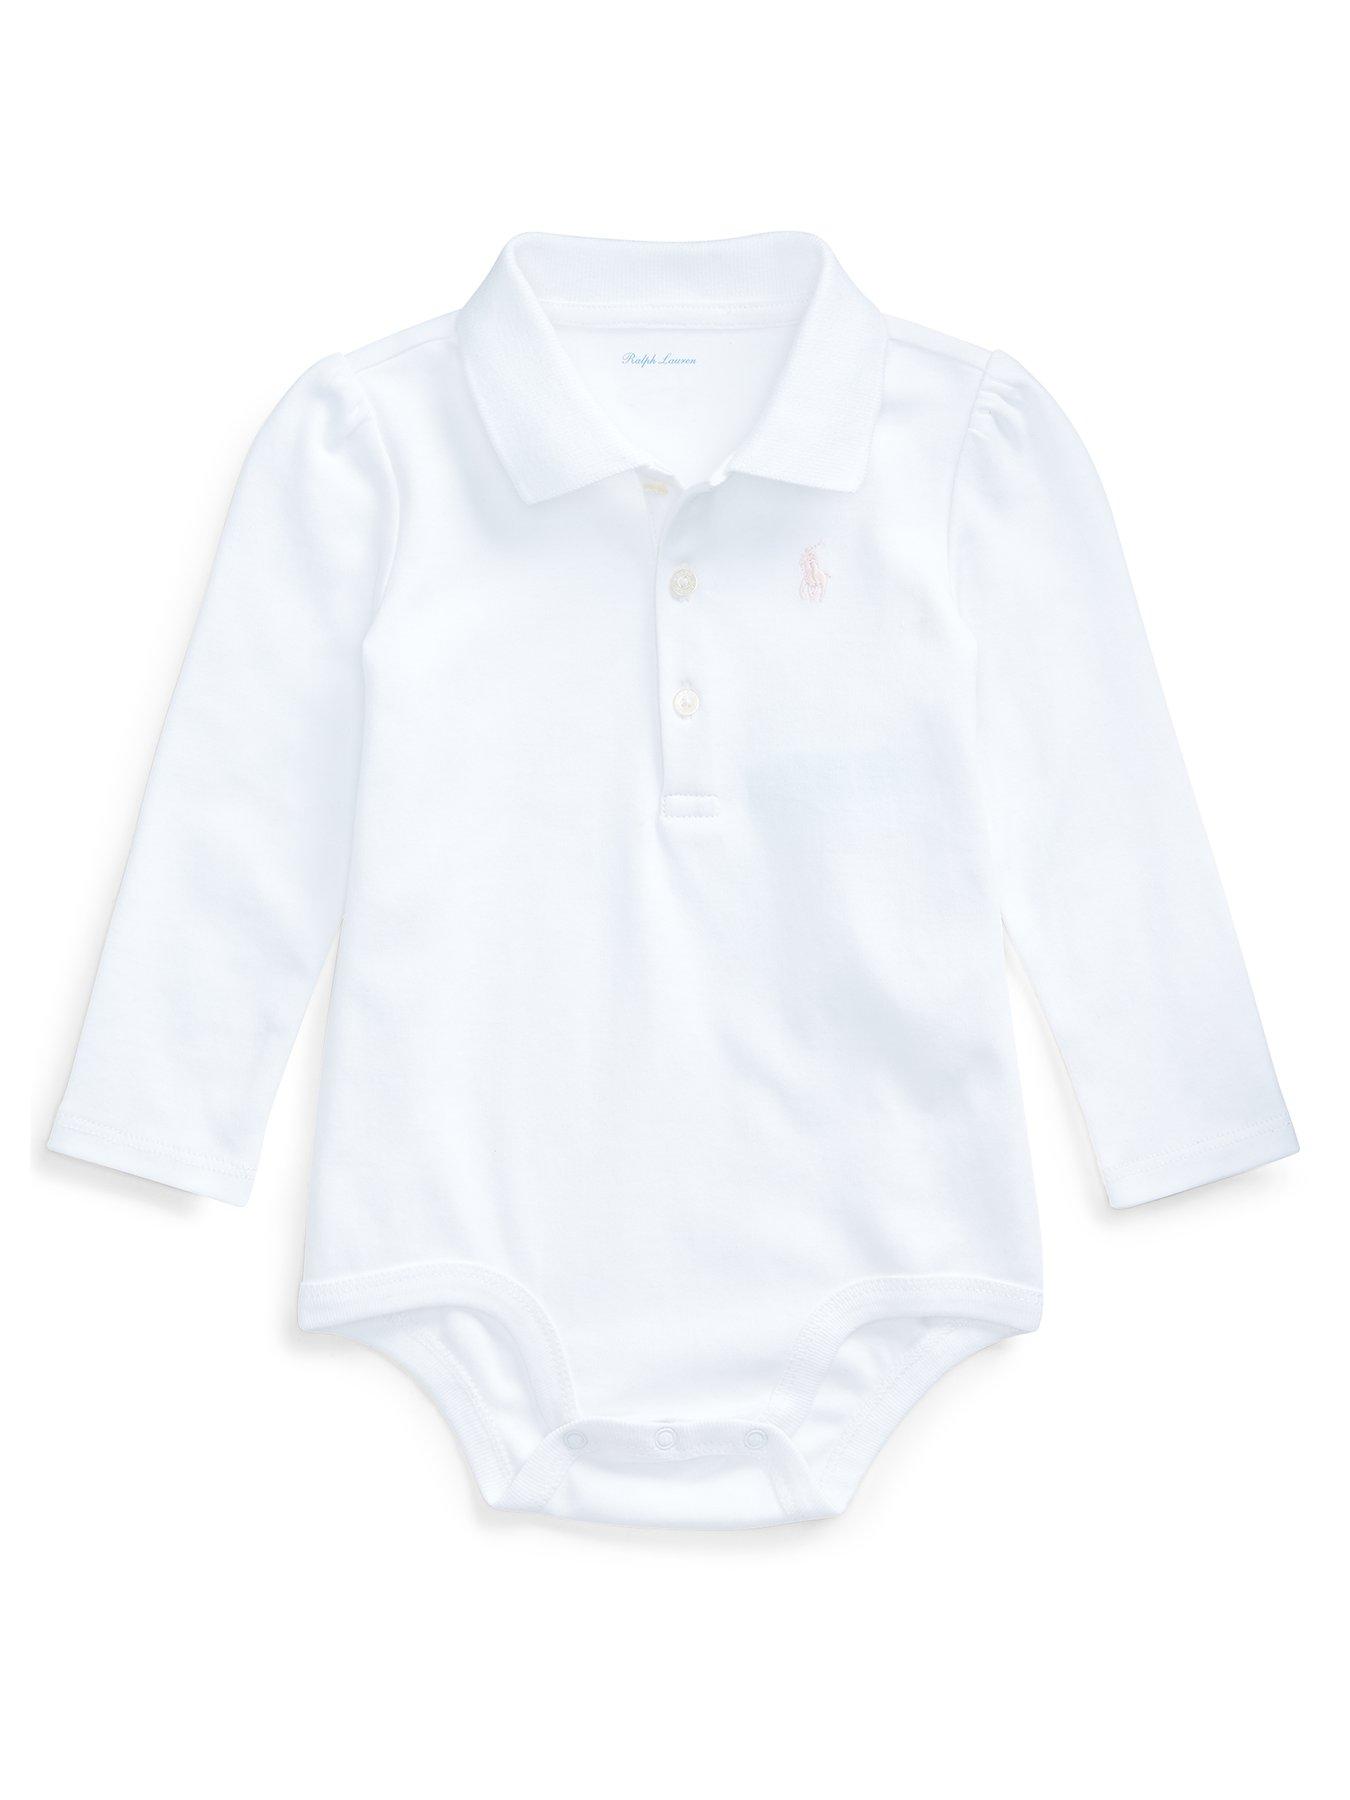 Ralph Lauren Baby Clothes | Very.co.uk